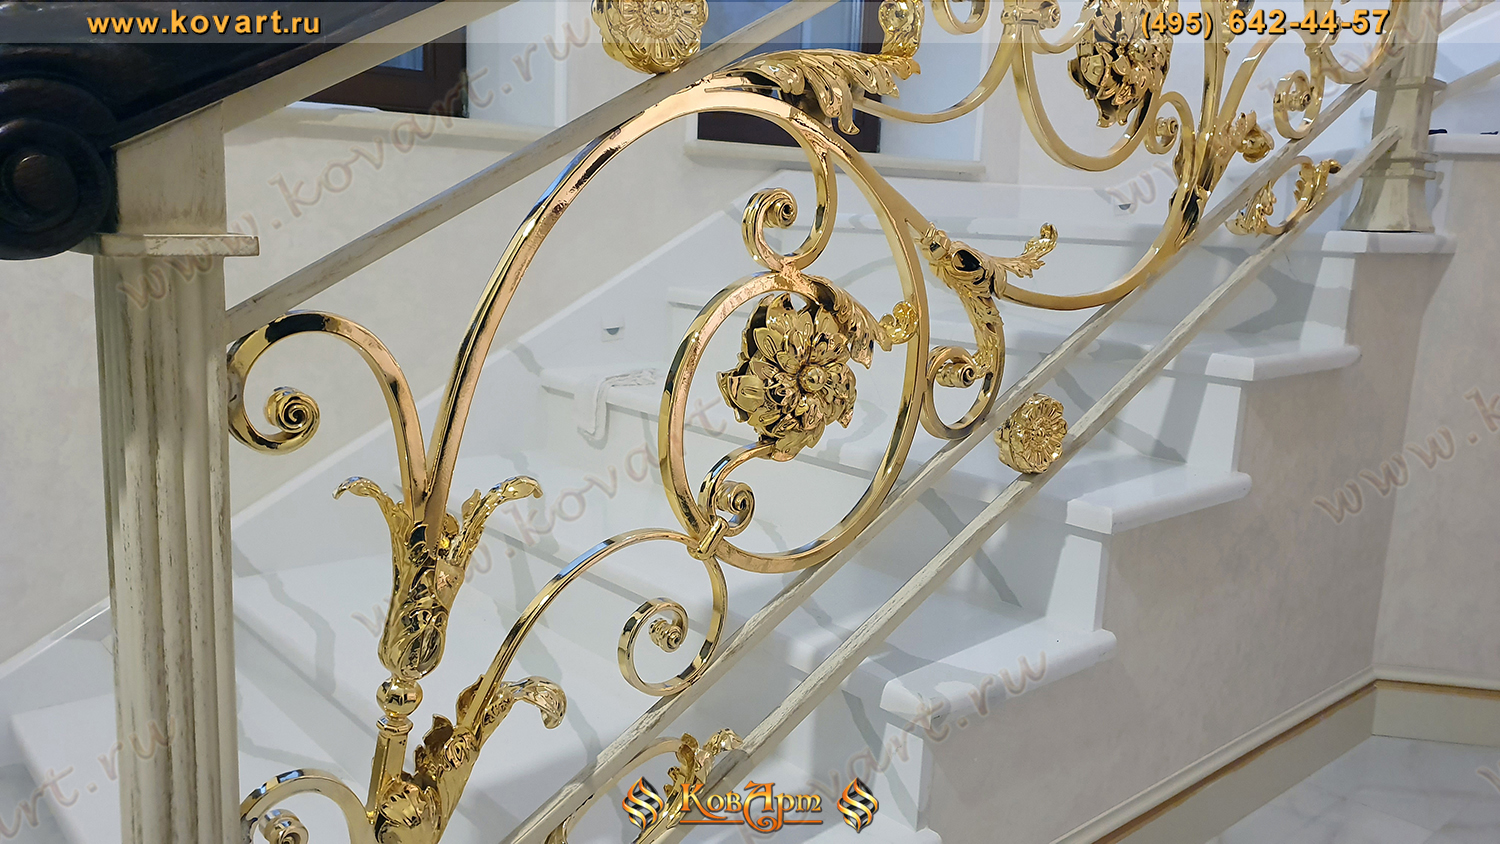 Мраморная лестница с кованым золотым узором на перилах Код: ЛП-021/70